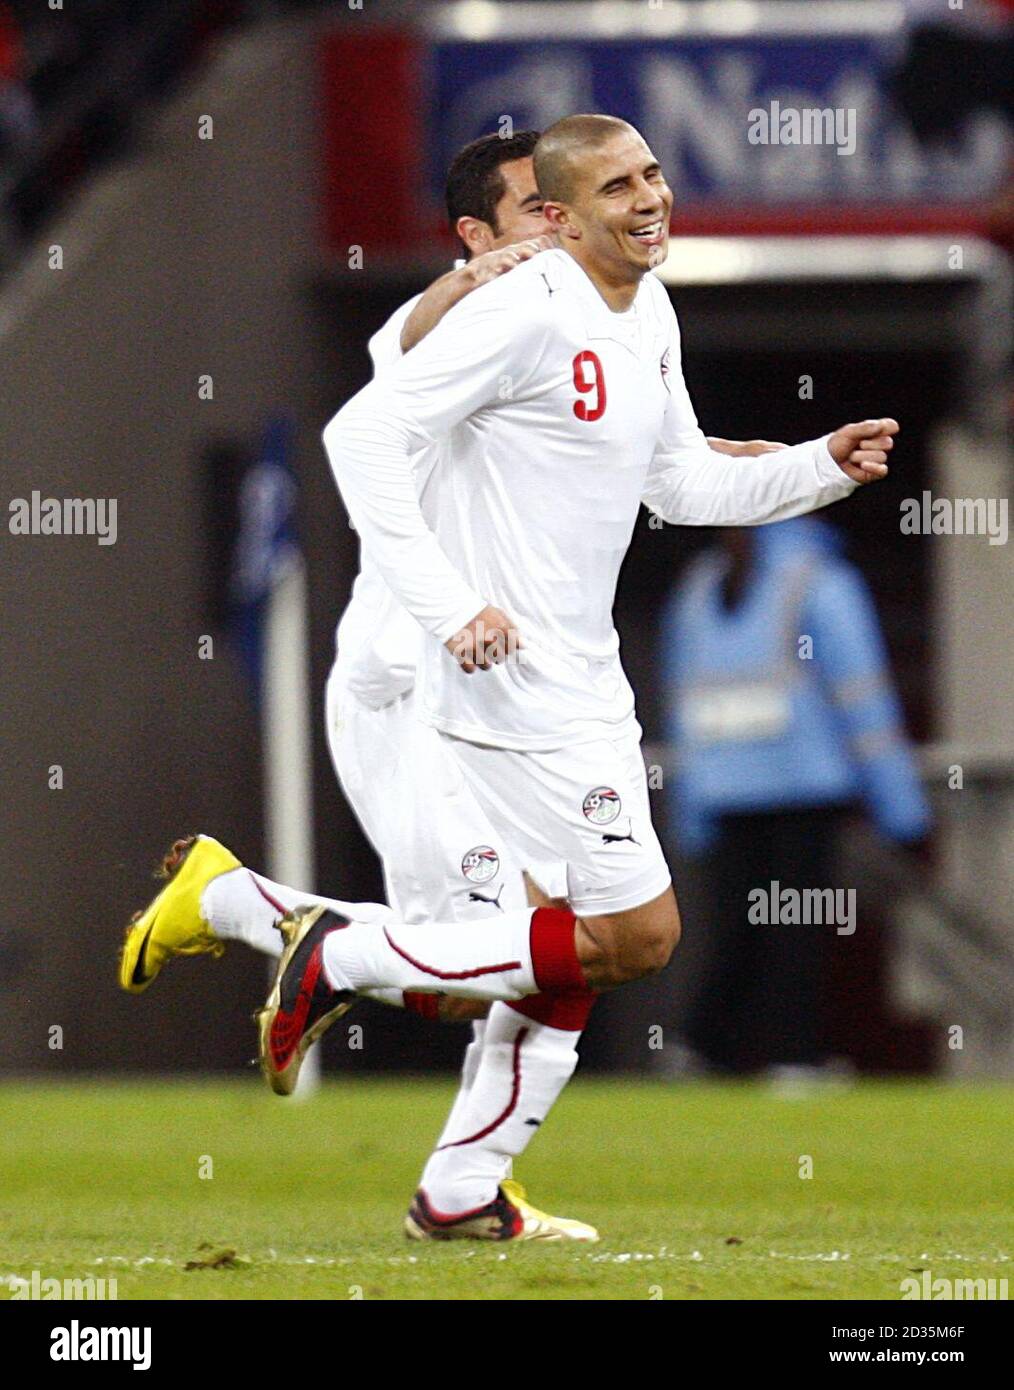 Egypt's Mohamed Zidan celebrates scoring the opening goal. Stock Photo